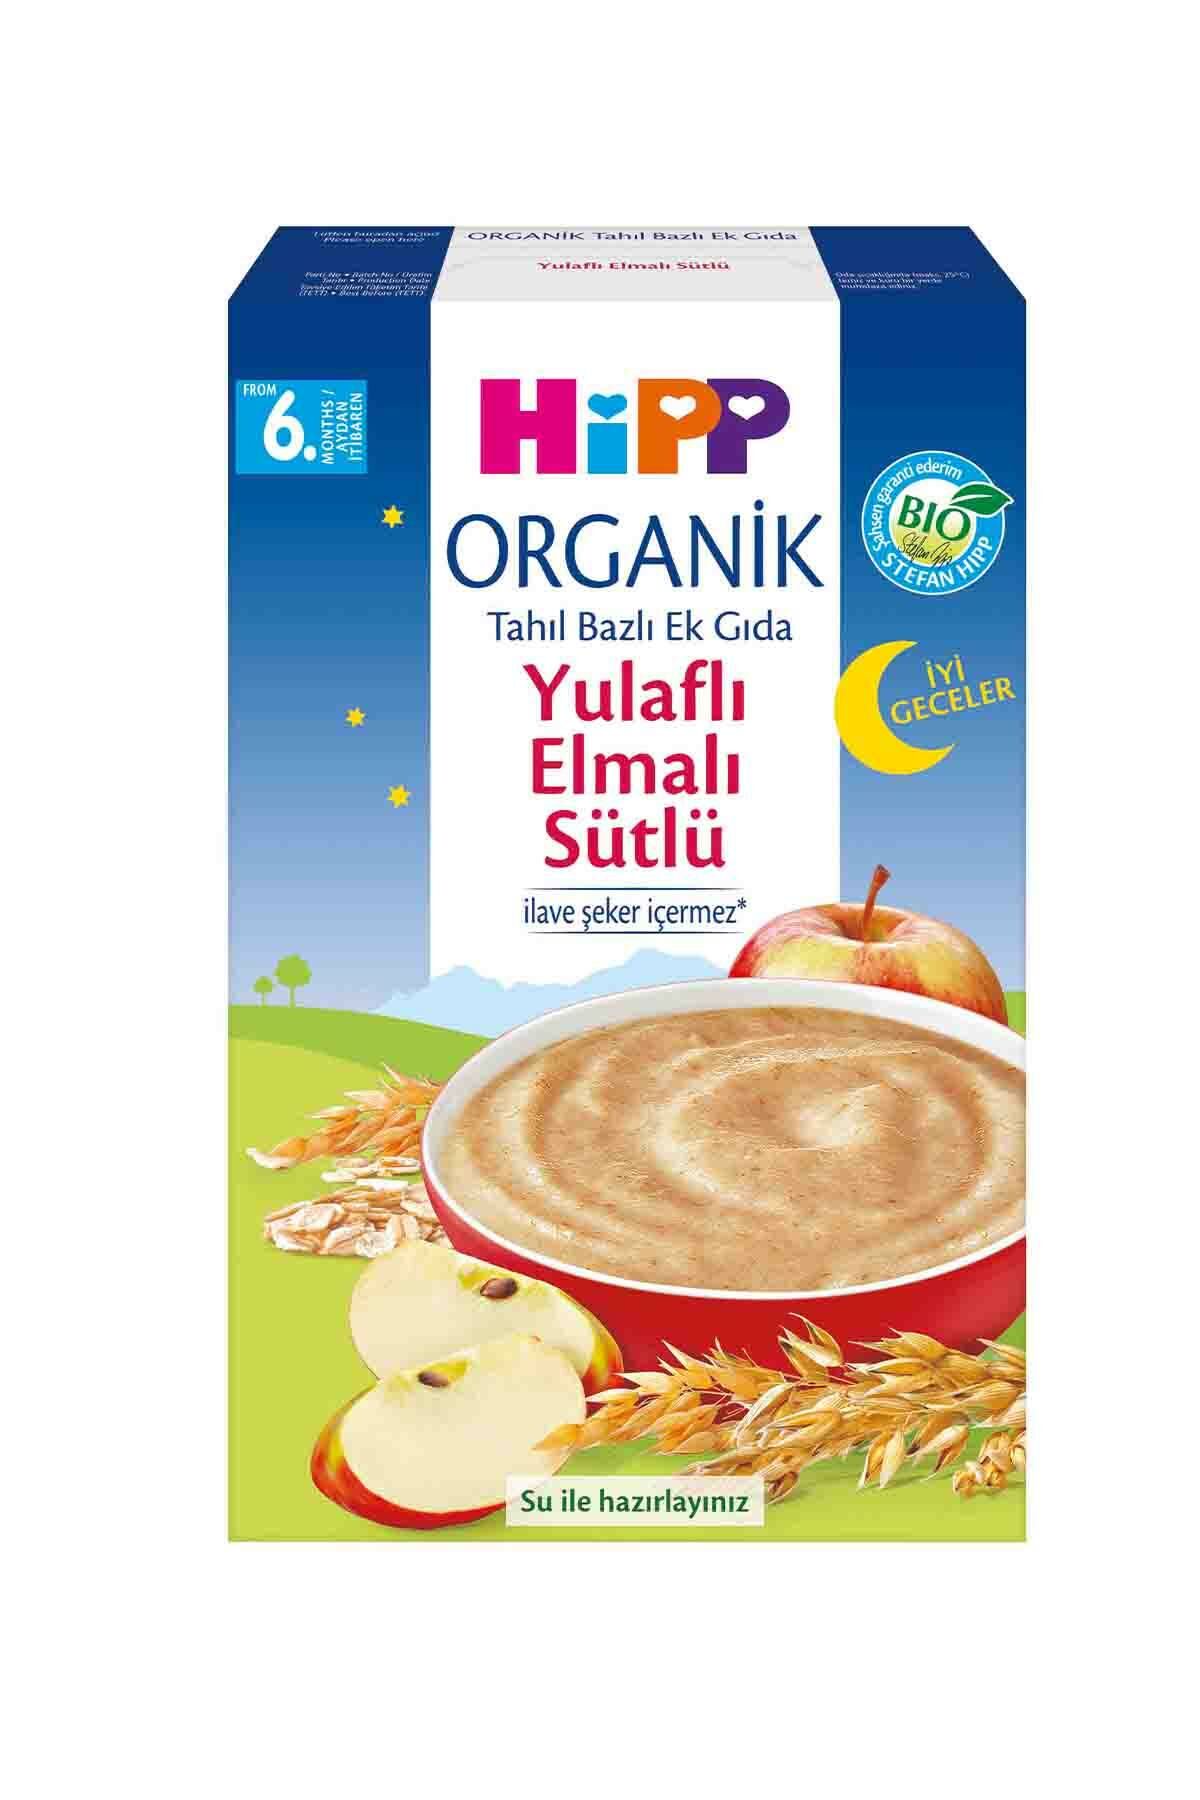 HiPP Organik İyi Geceler  Yulaflı Elmalı Sütlü